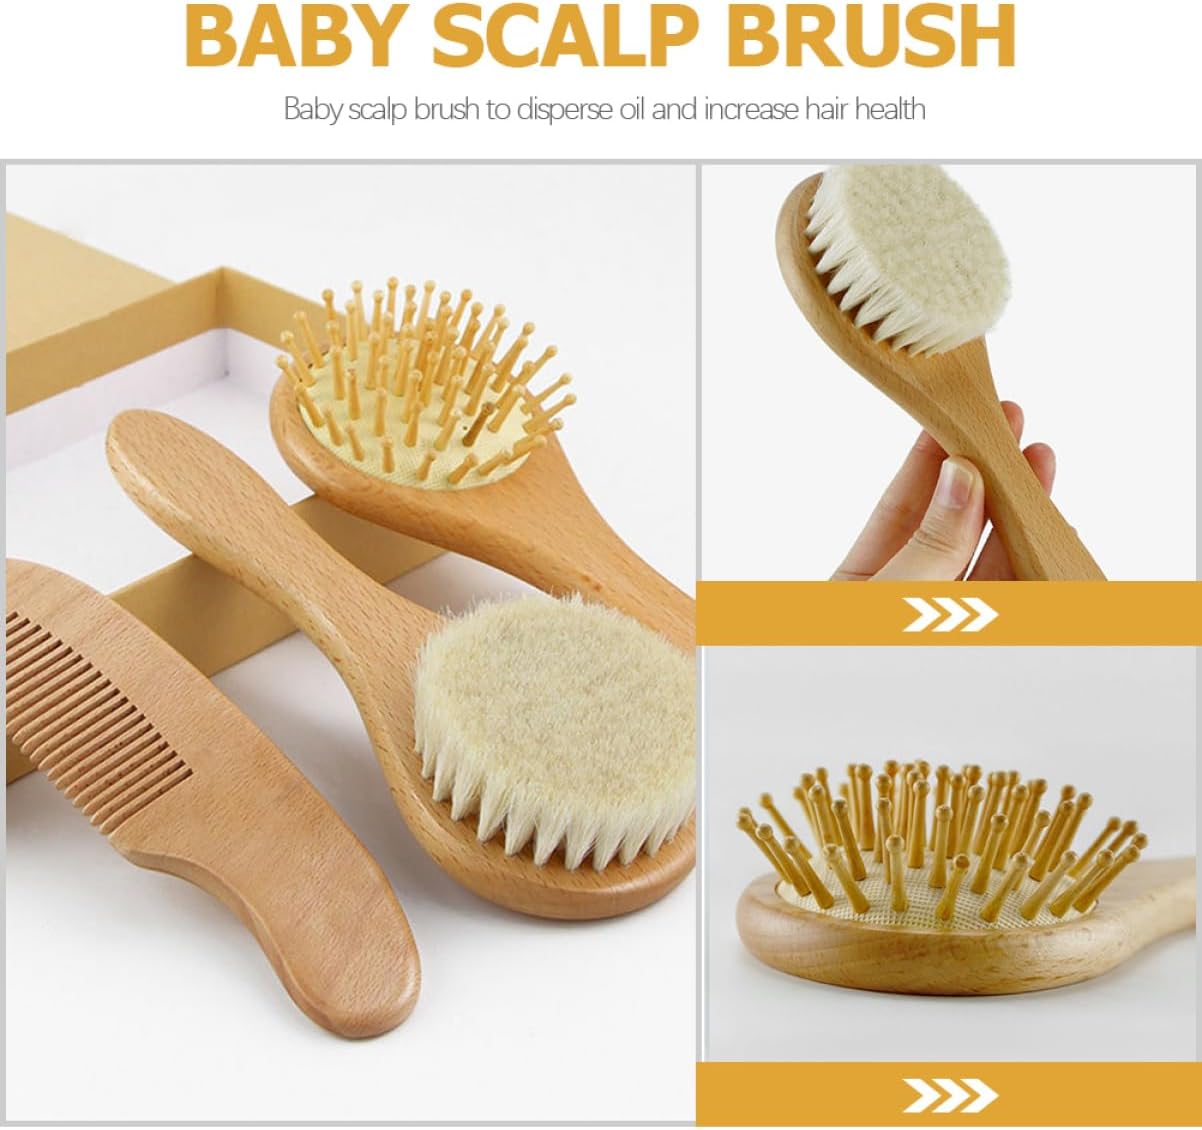 Elite Baby Grooming Kit: Premium Wooden Hair Brush Set for Infants